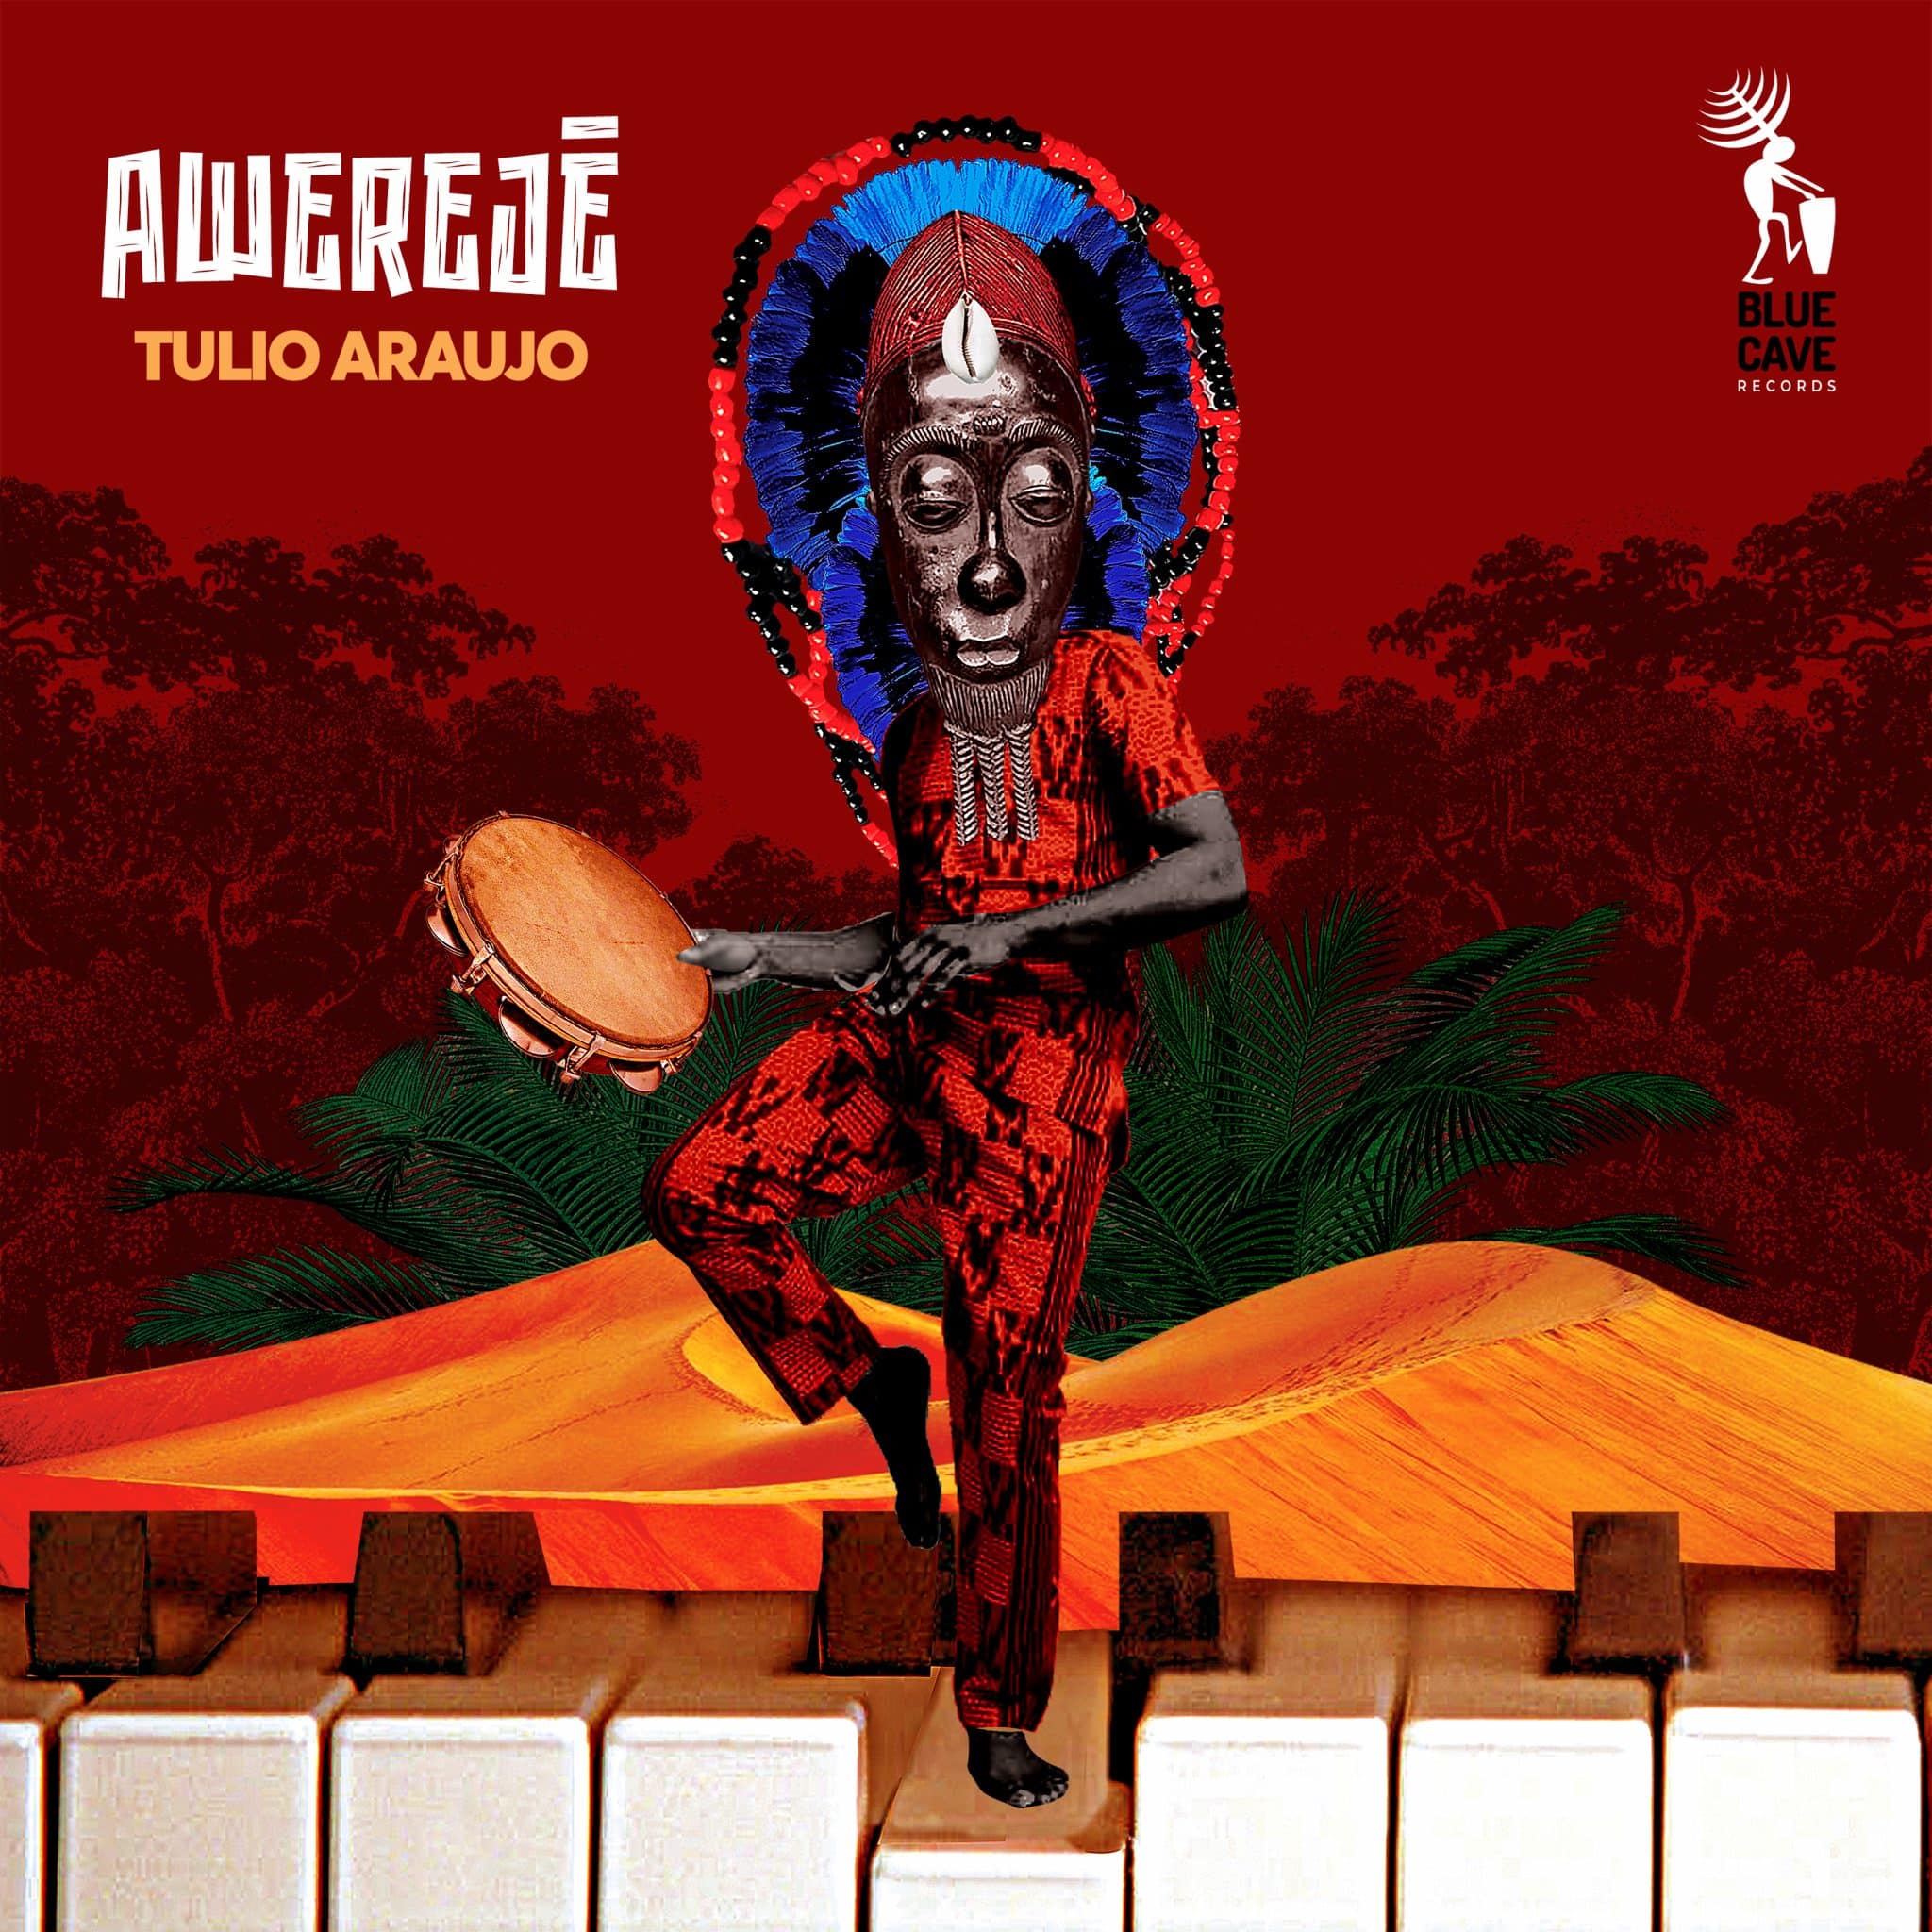 revistaprosaversoearte.com - 'Awerejê', sexto álbum do ritmista mineiro Tulio Araujo